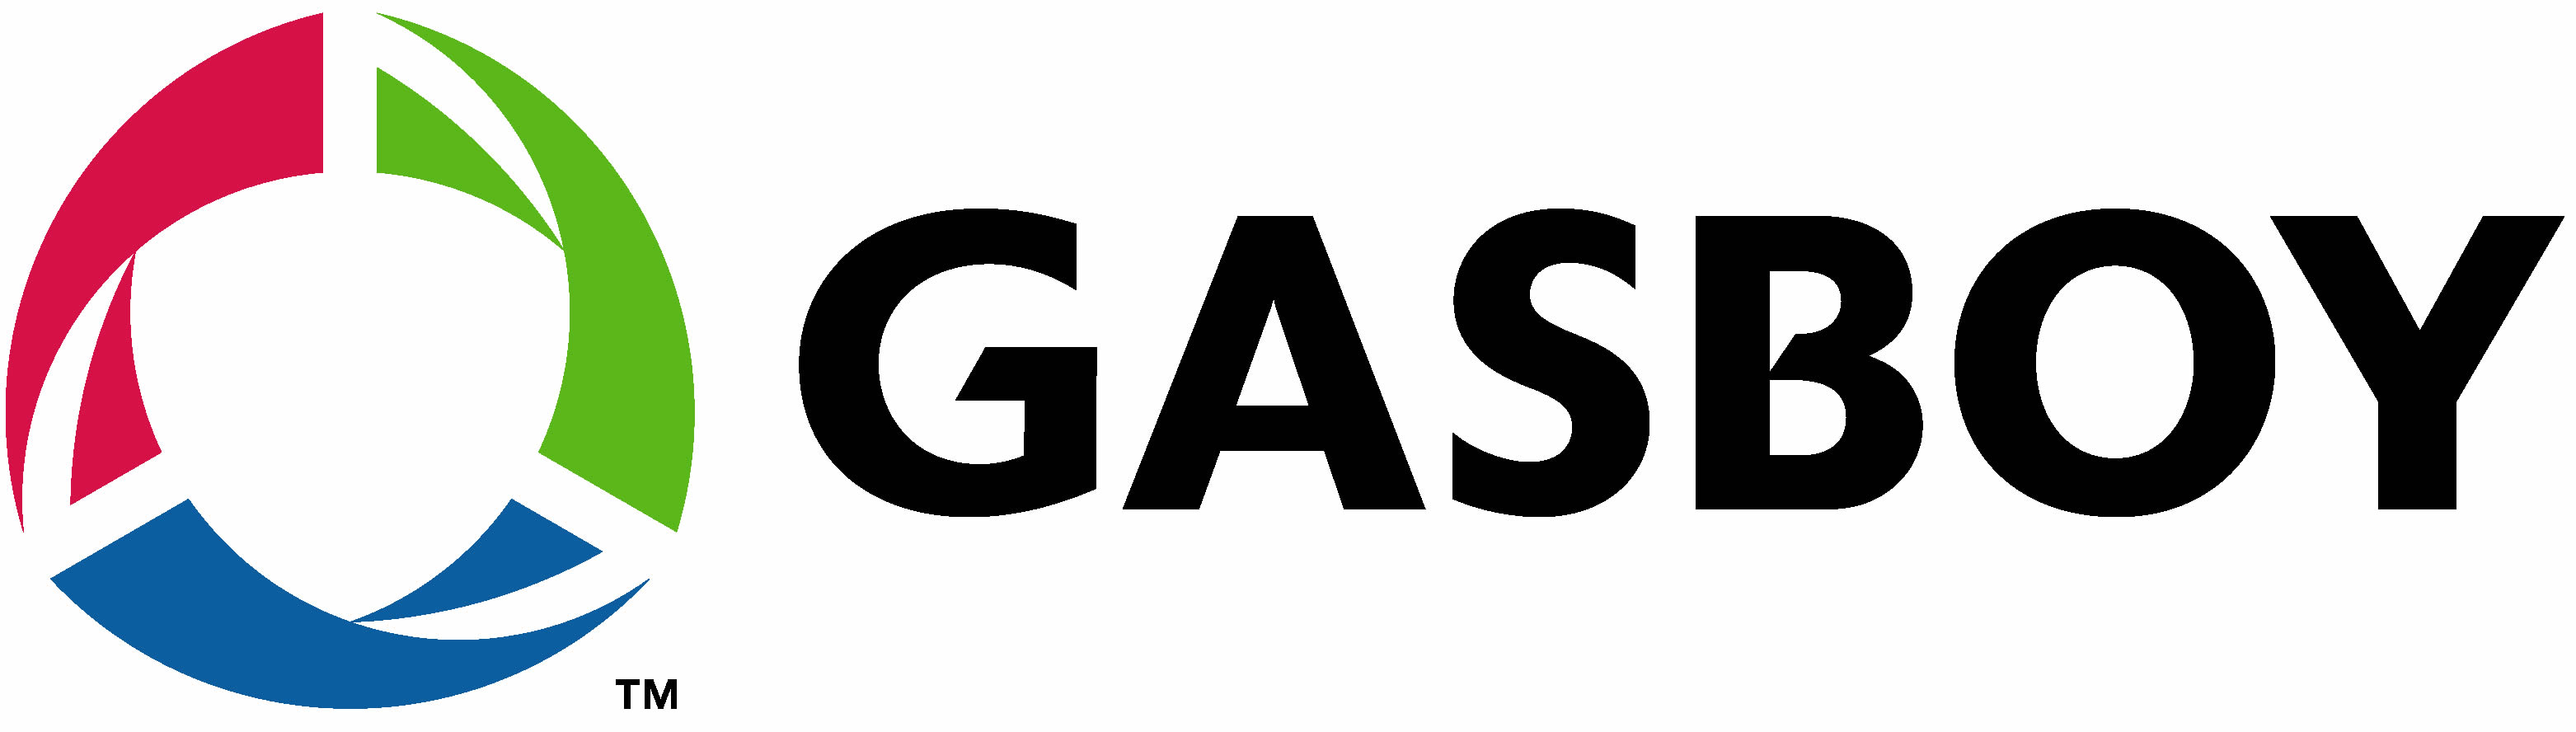 Gasboy - logo